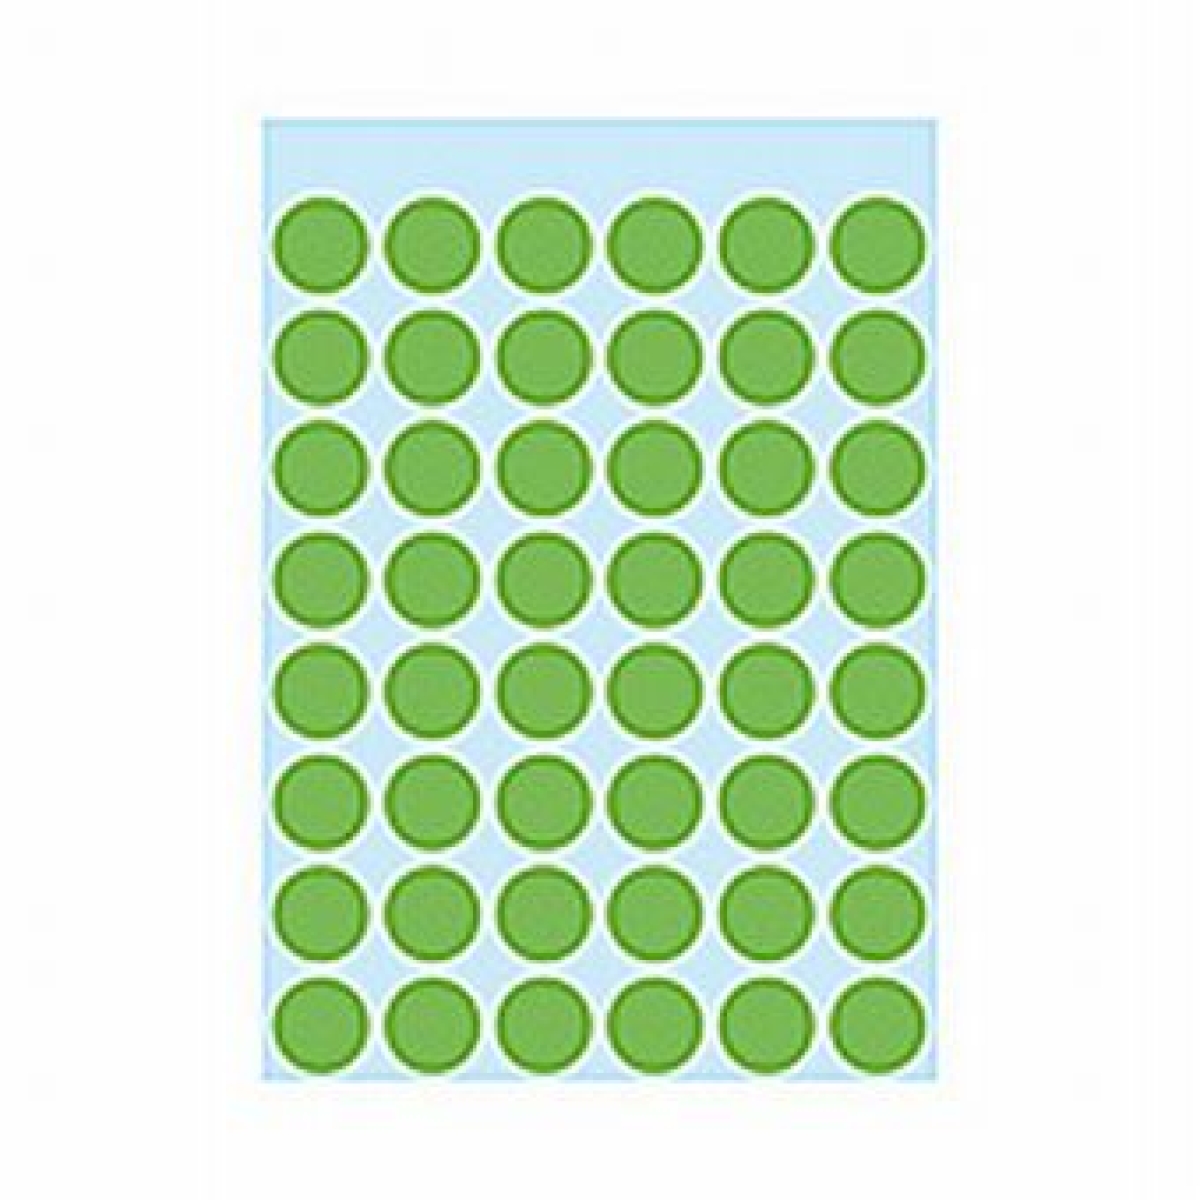 HermaEtikett Markierungspunkt 13mmD 240ST grün haftend 1865Artikel-Nr: 4008705018654